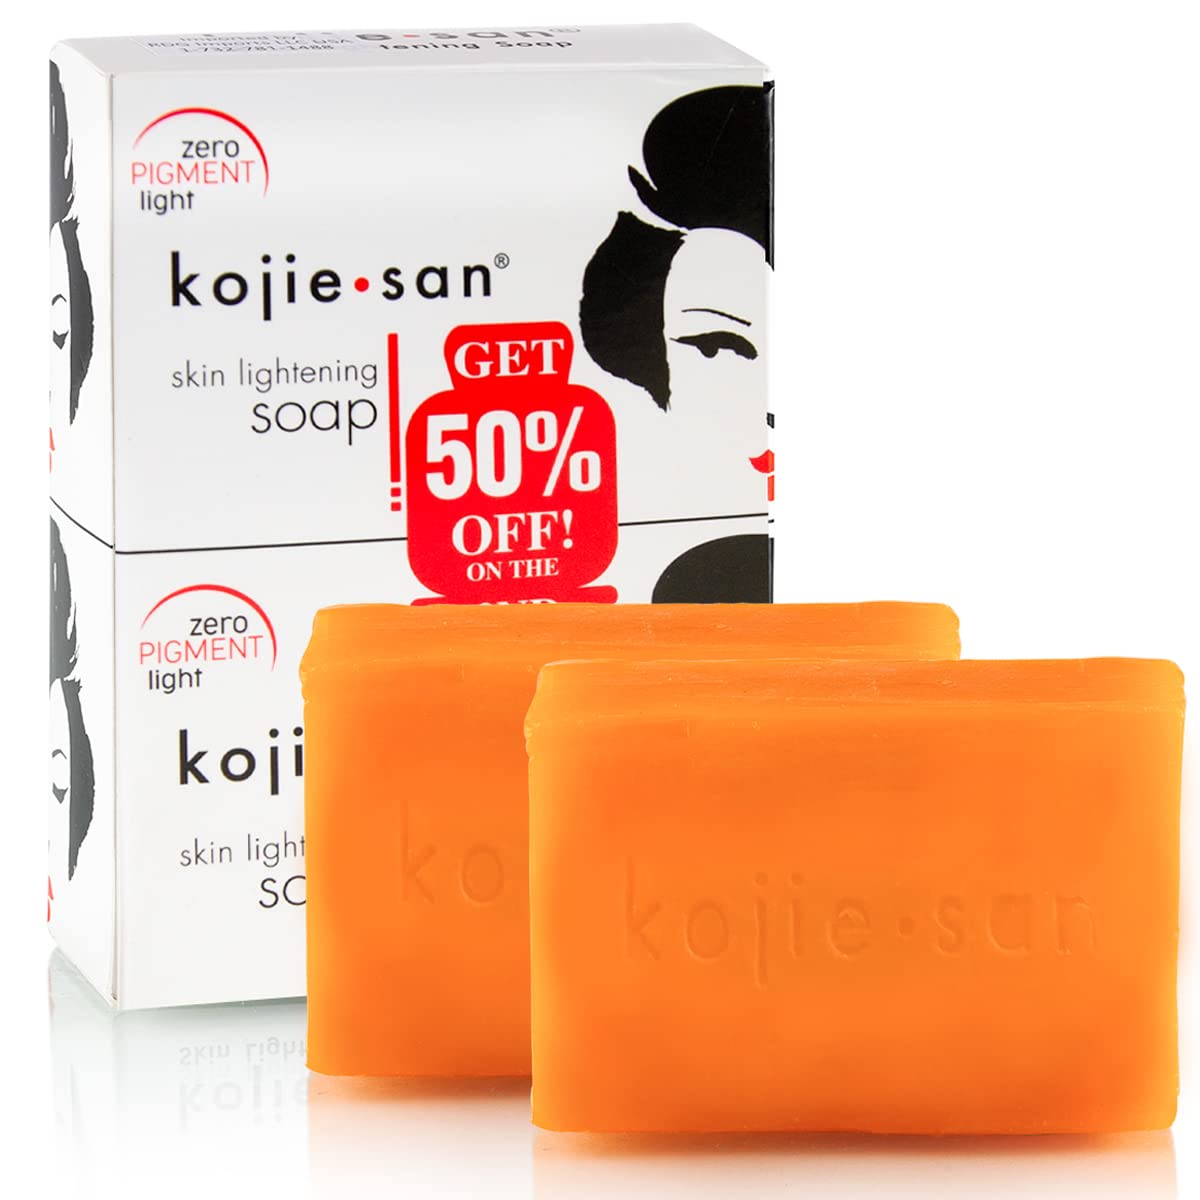 Original Kojie San Skin Lightening Kojic Acid Soap 2 pcs x 65g